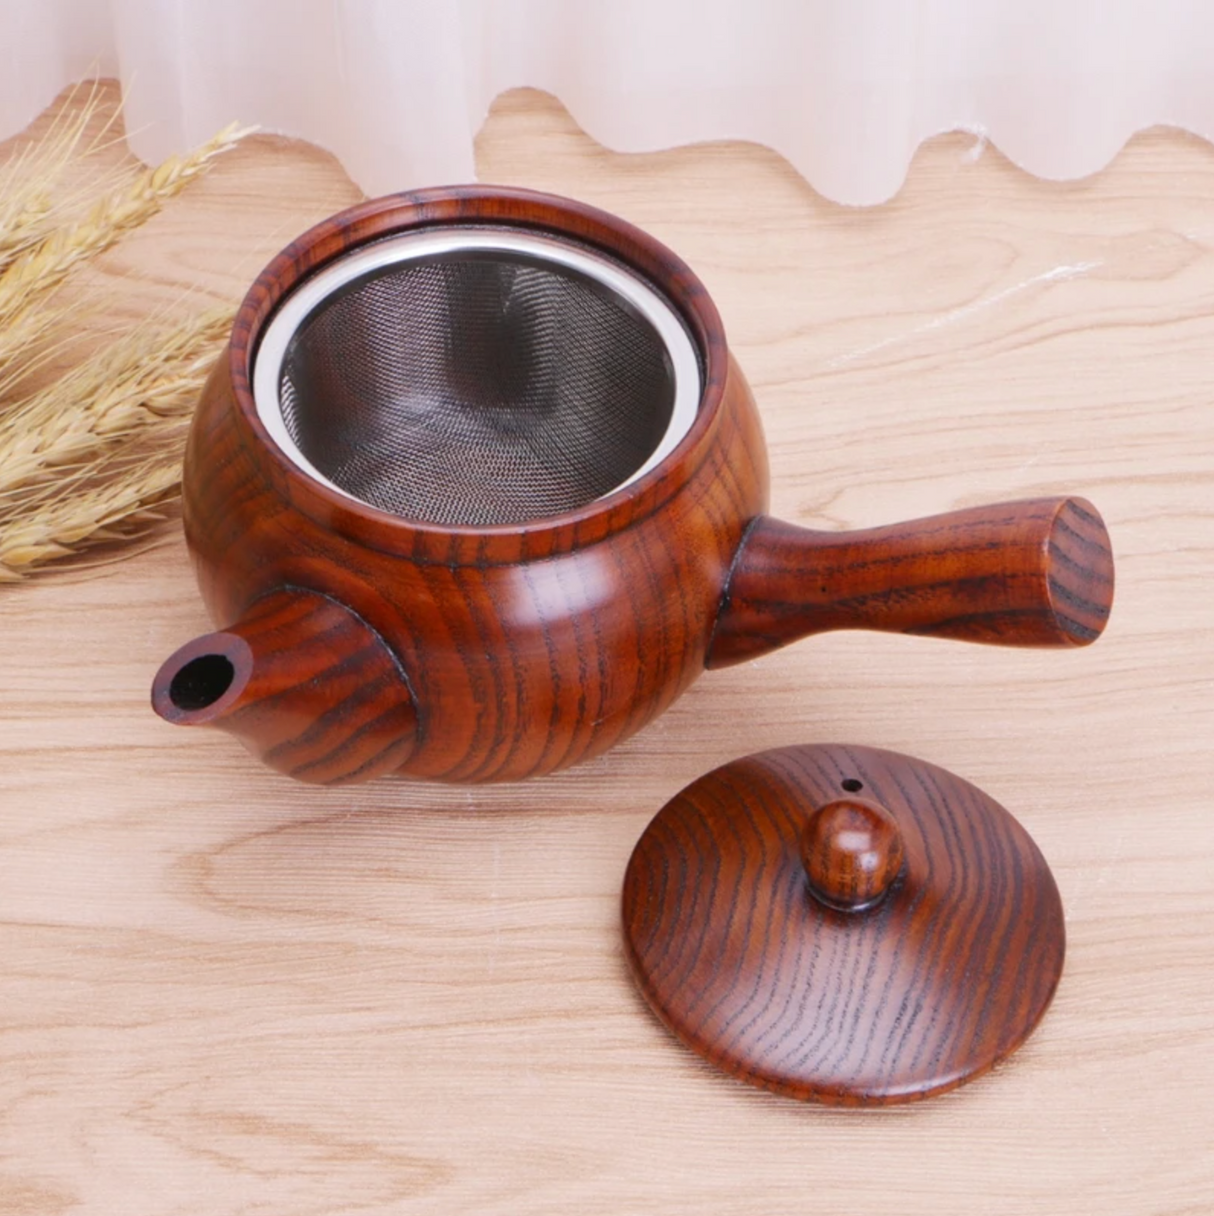 Japanese wooden kyusu teapot